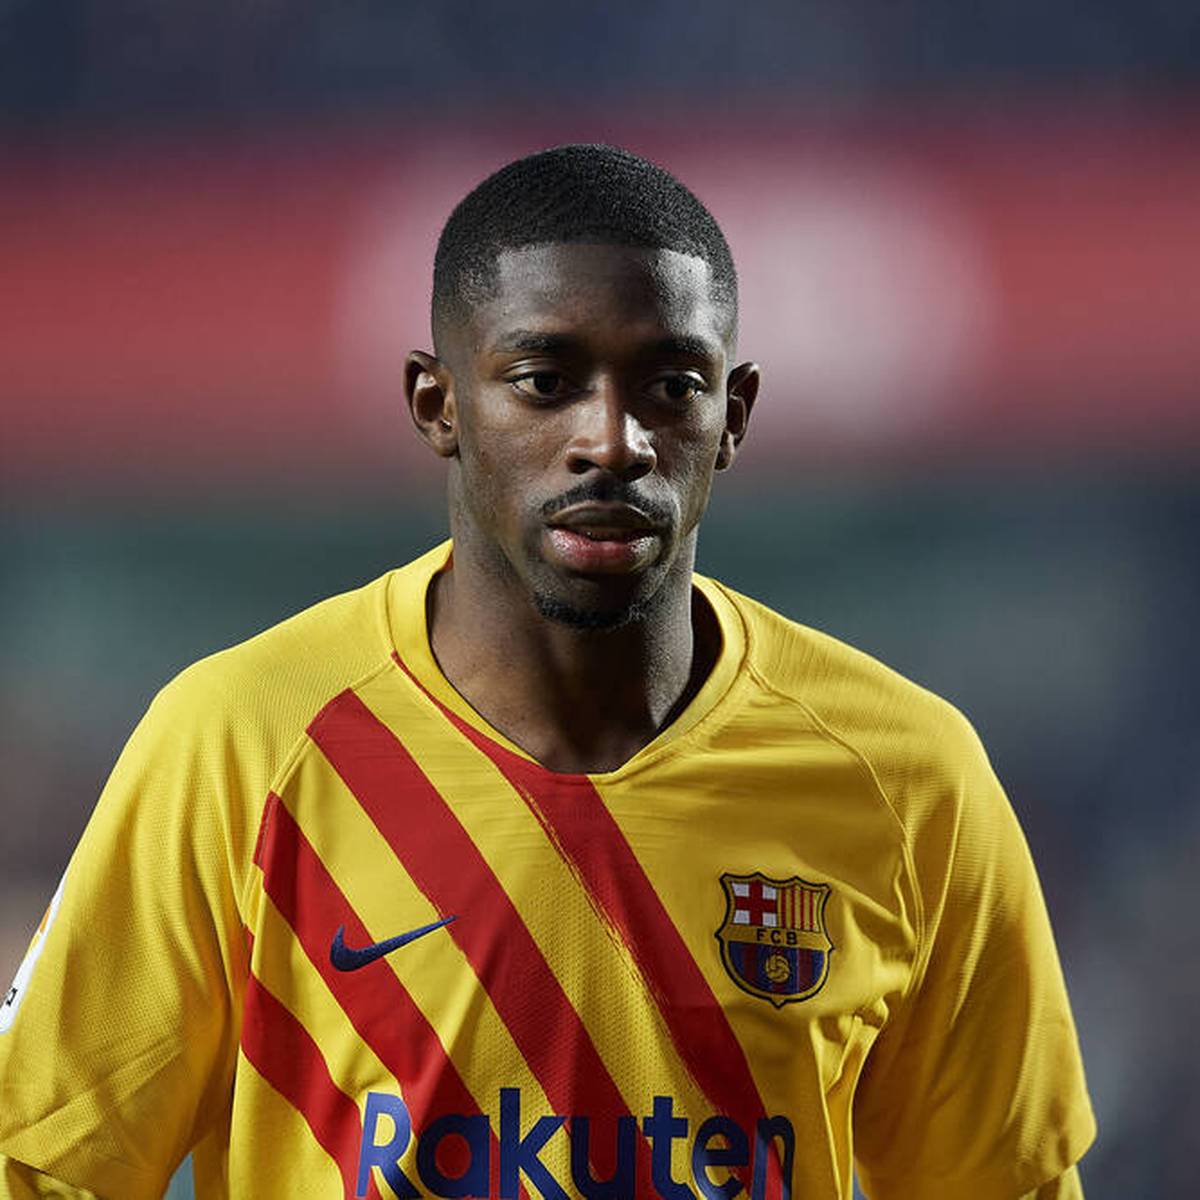 Der FC Barcelona will Ousmane Dembélé schon im Winter verkaufen. Nun meldet sich der Spieler zu Wort.